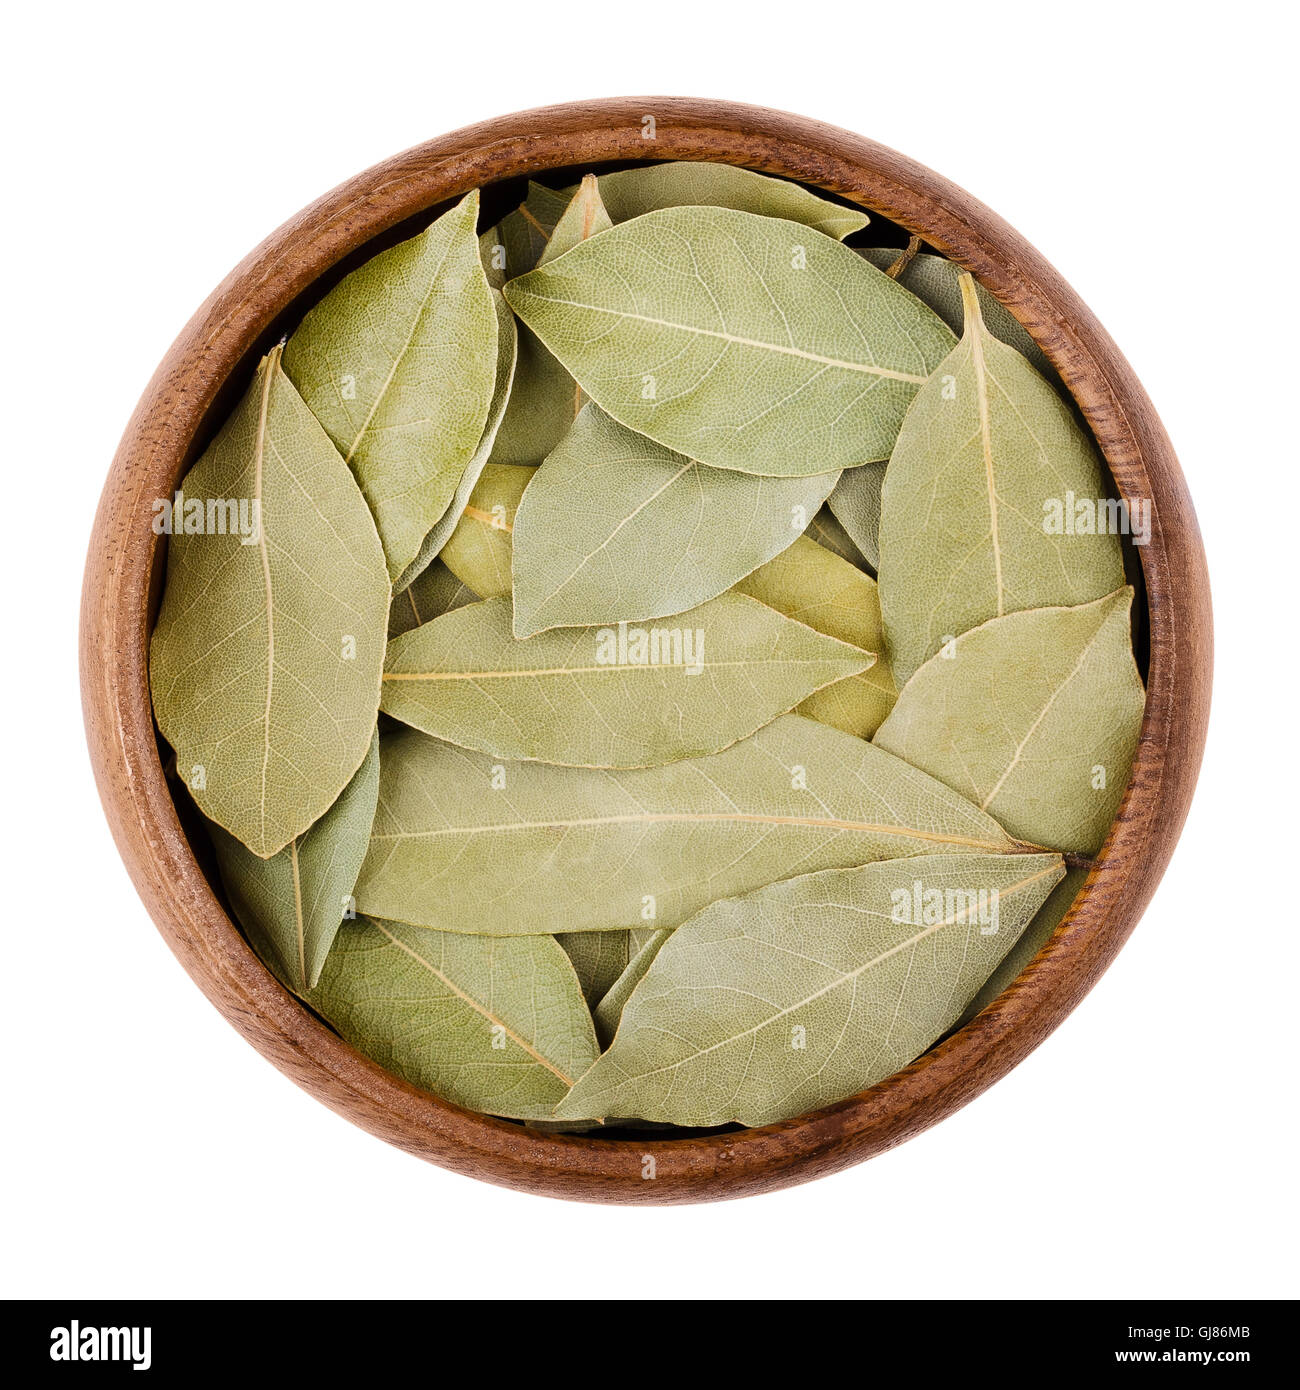 Les feuilles de laurier séchées dans un bol sur le blanc. Feuilles aromatiques de Laurus nobilis, également appelé laurel, utilisée comme condiment en cuisine. Banque D'Images